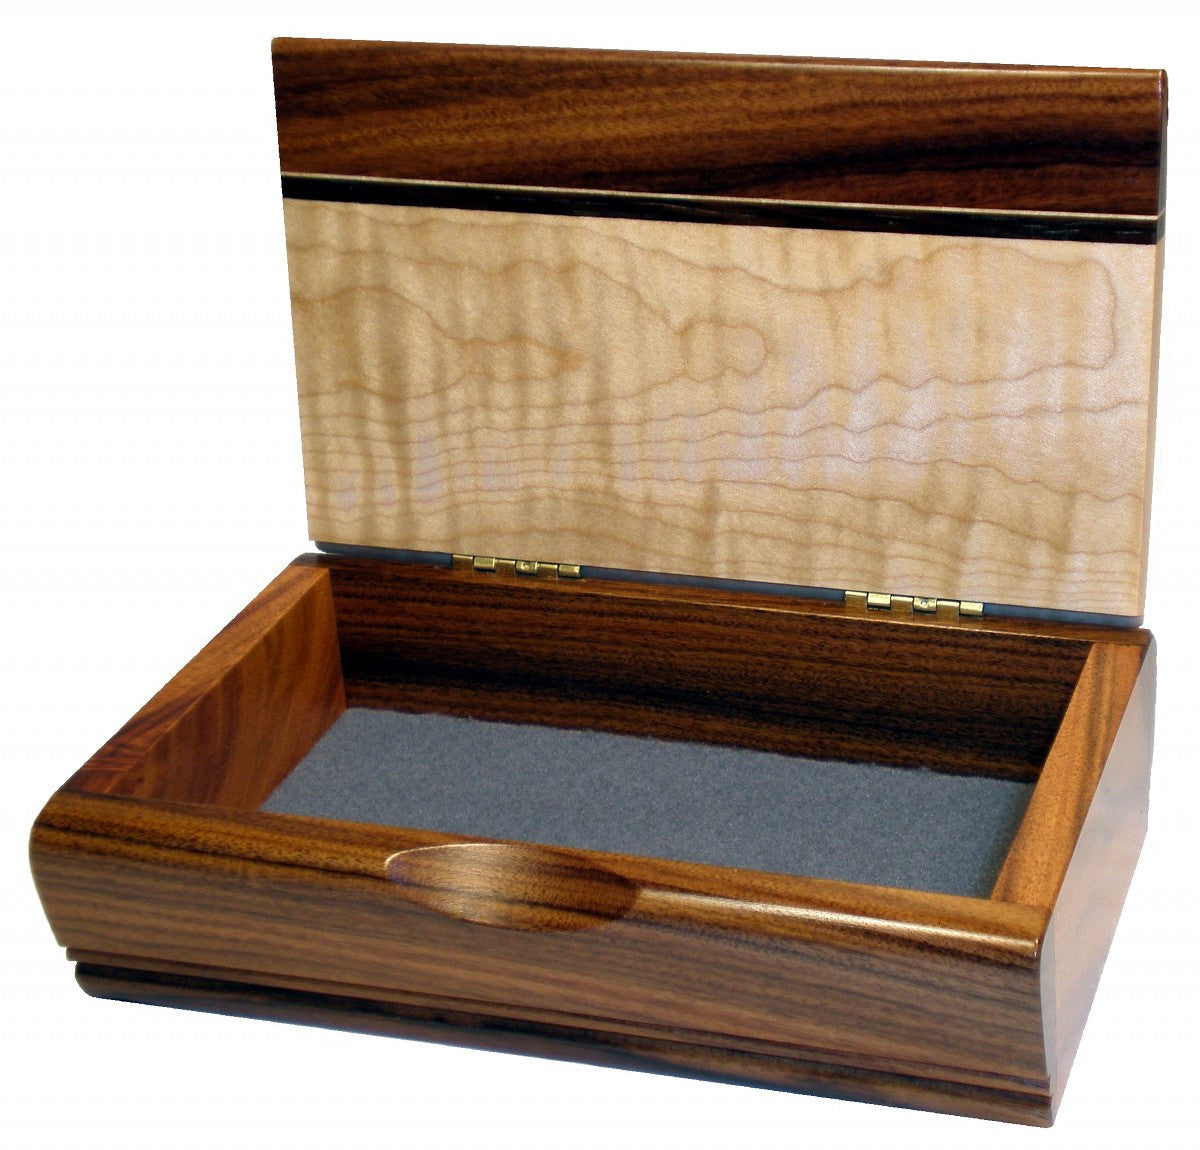 Desktop Treasure Box - An American Craftsman